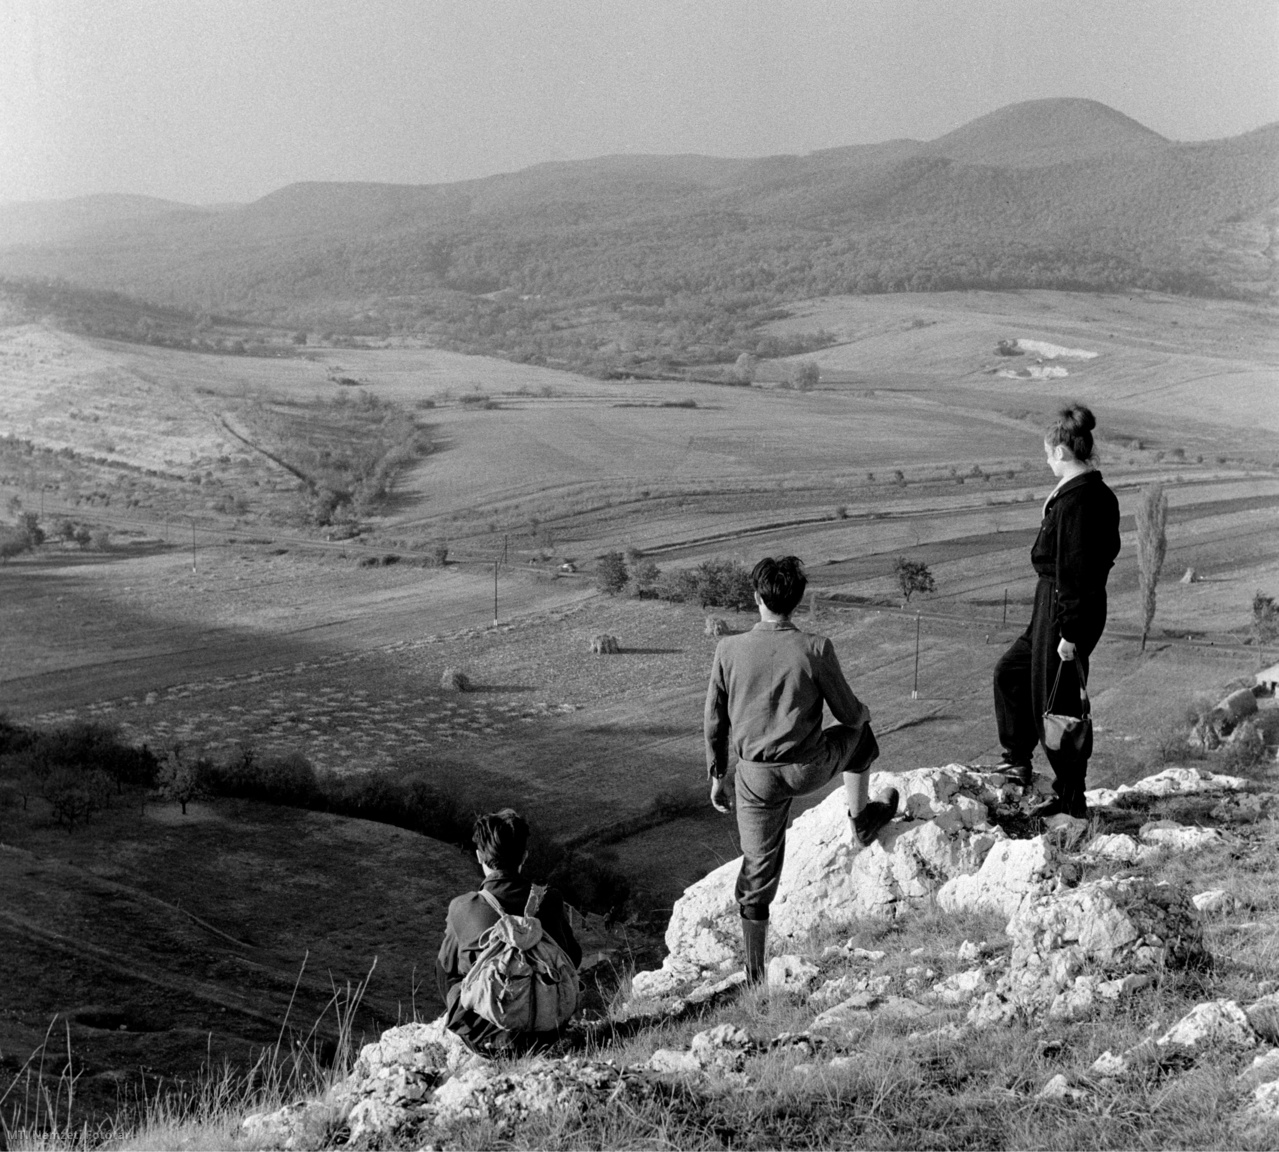 Magyarország, 1959. október 19. Kirándulók nézik a Párduclyukról a Csikóvárra nyíló kilátást a Pilis hegységben.